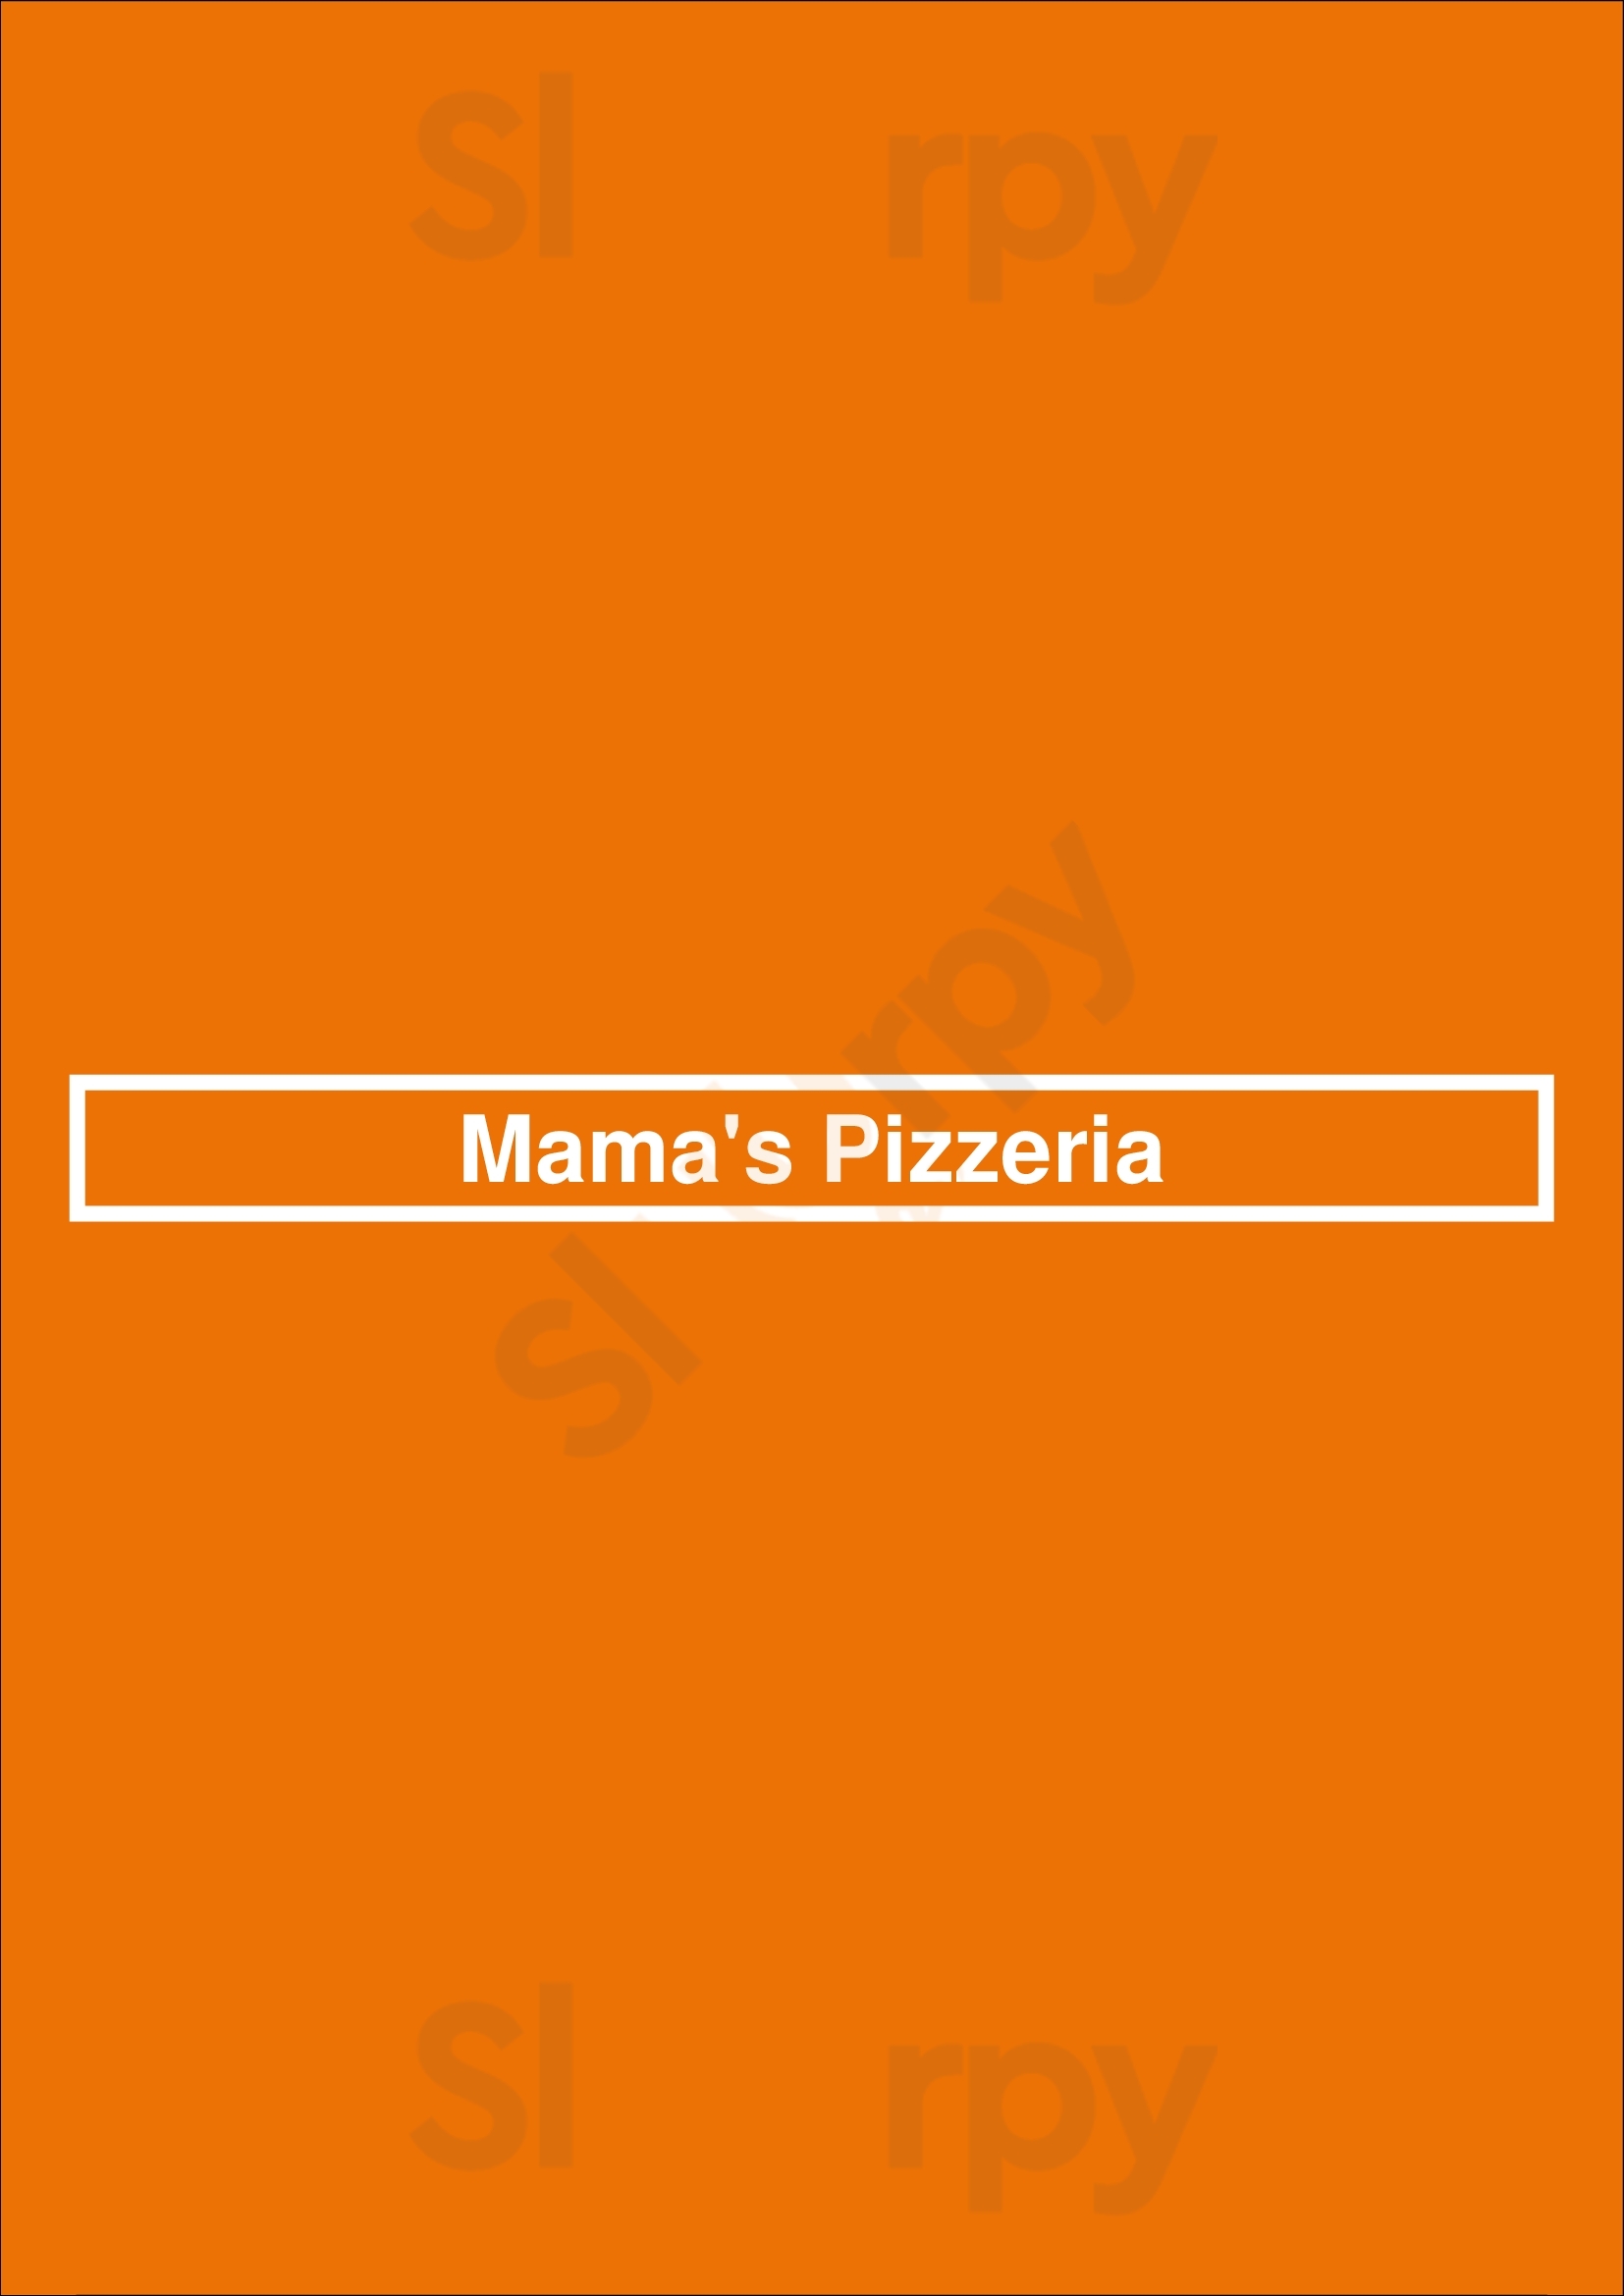 Mama's Pizzeria Oldham Menu - 1